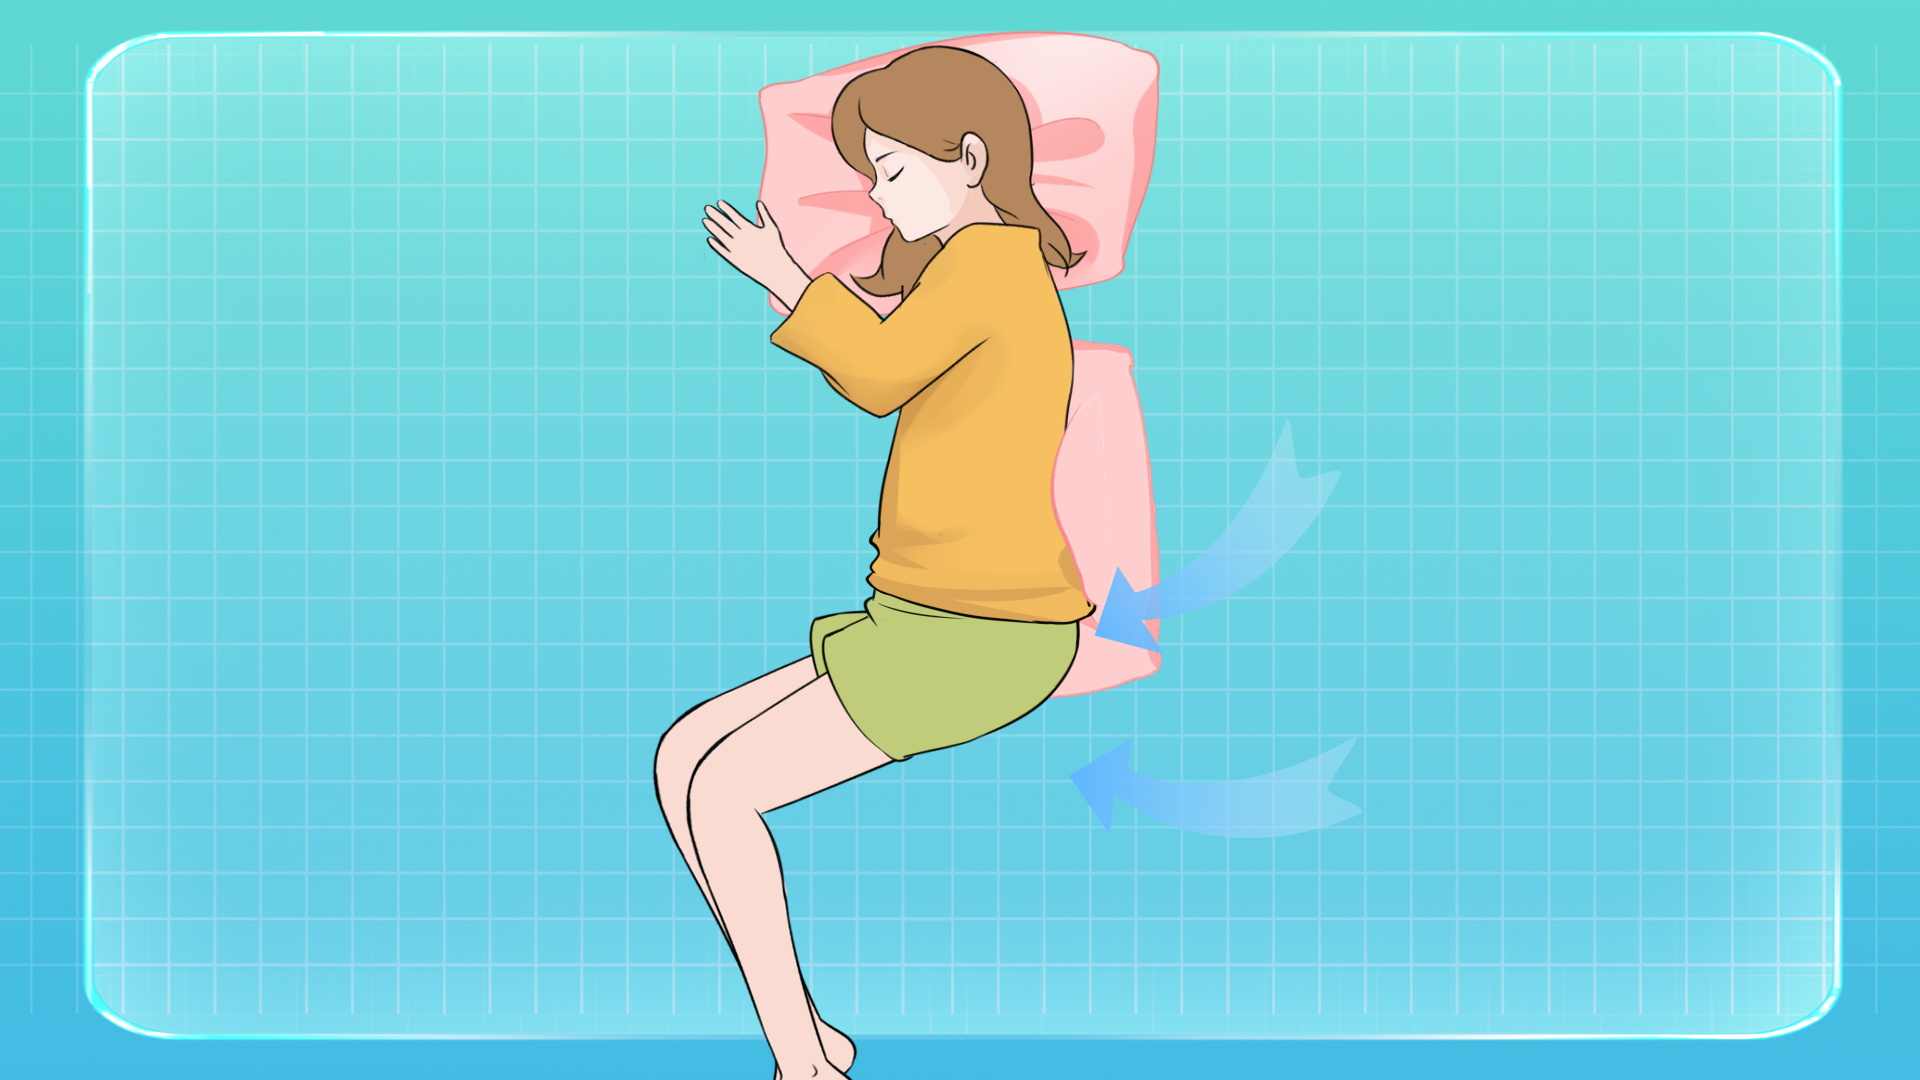 最佳睡觉姿势,睡觉最好的三种姿势图(4) - 伤感说说吧